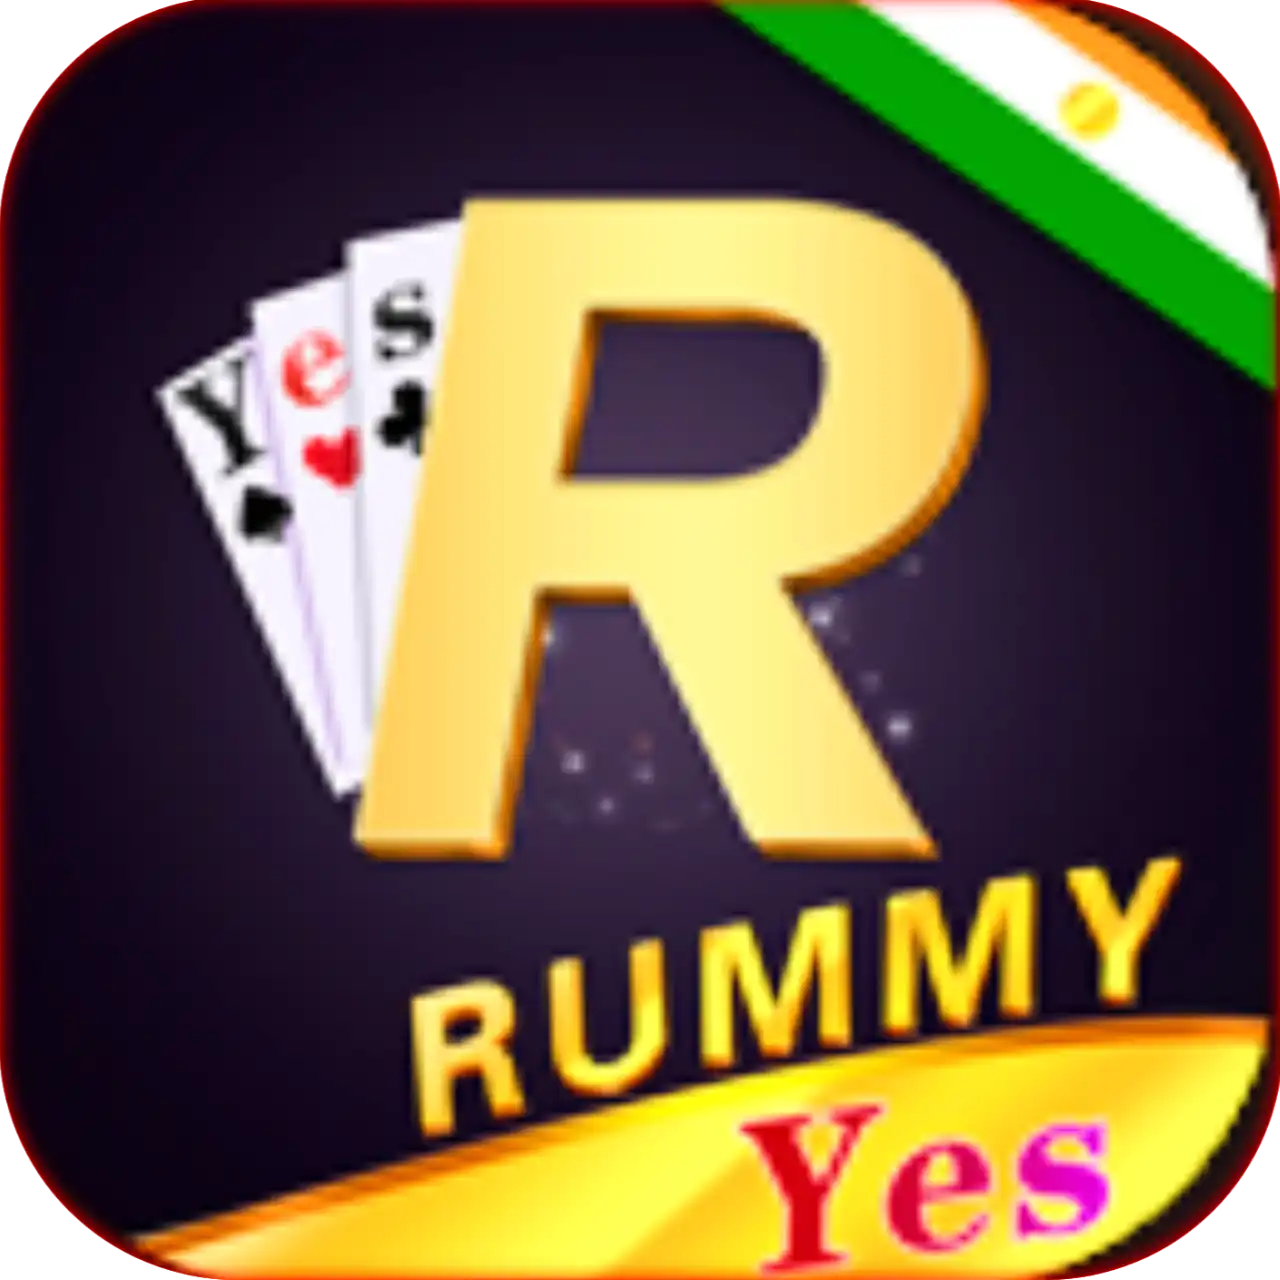 Rummy Yes - Rummy Club App